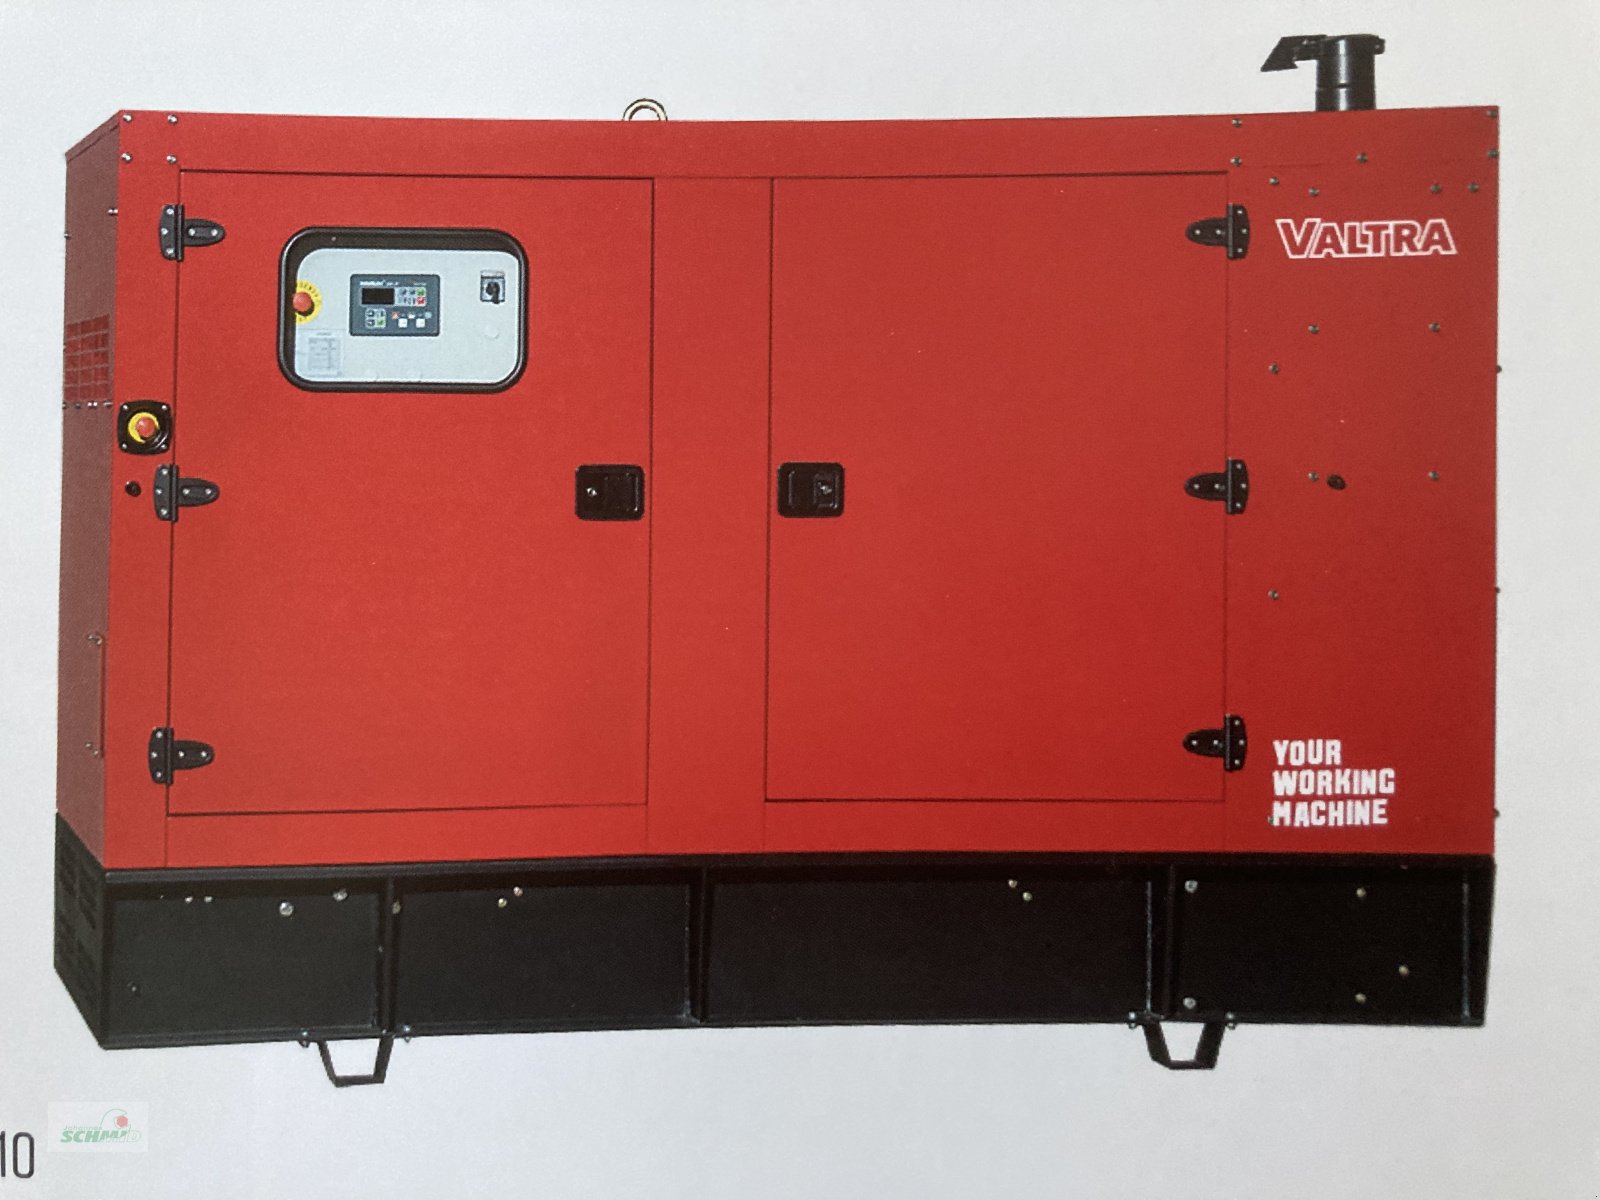 Notstromaggregat des Typs Valtra VG 60- VG 250, Neumaschine in Marktoberdorf (Bild 1)